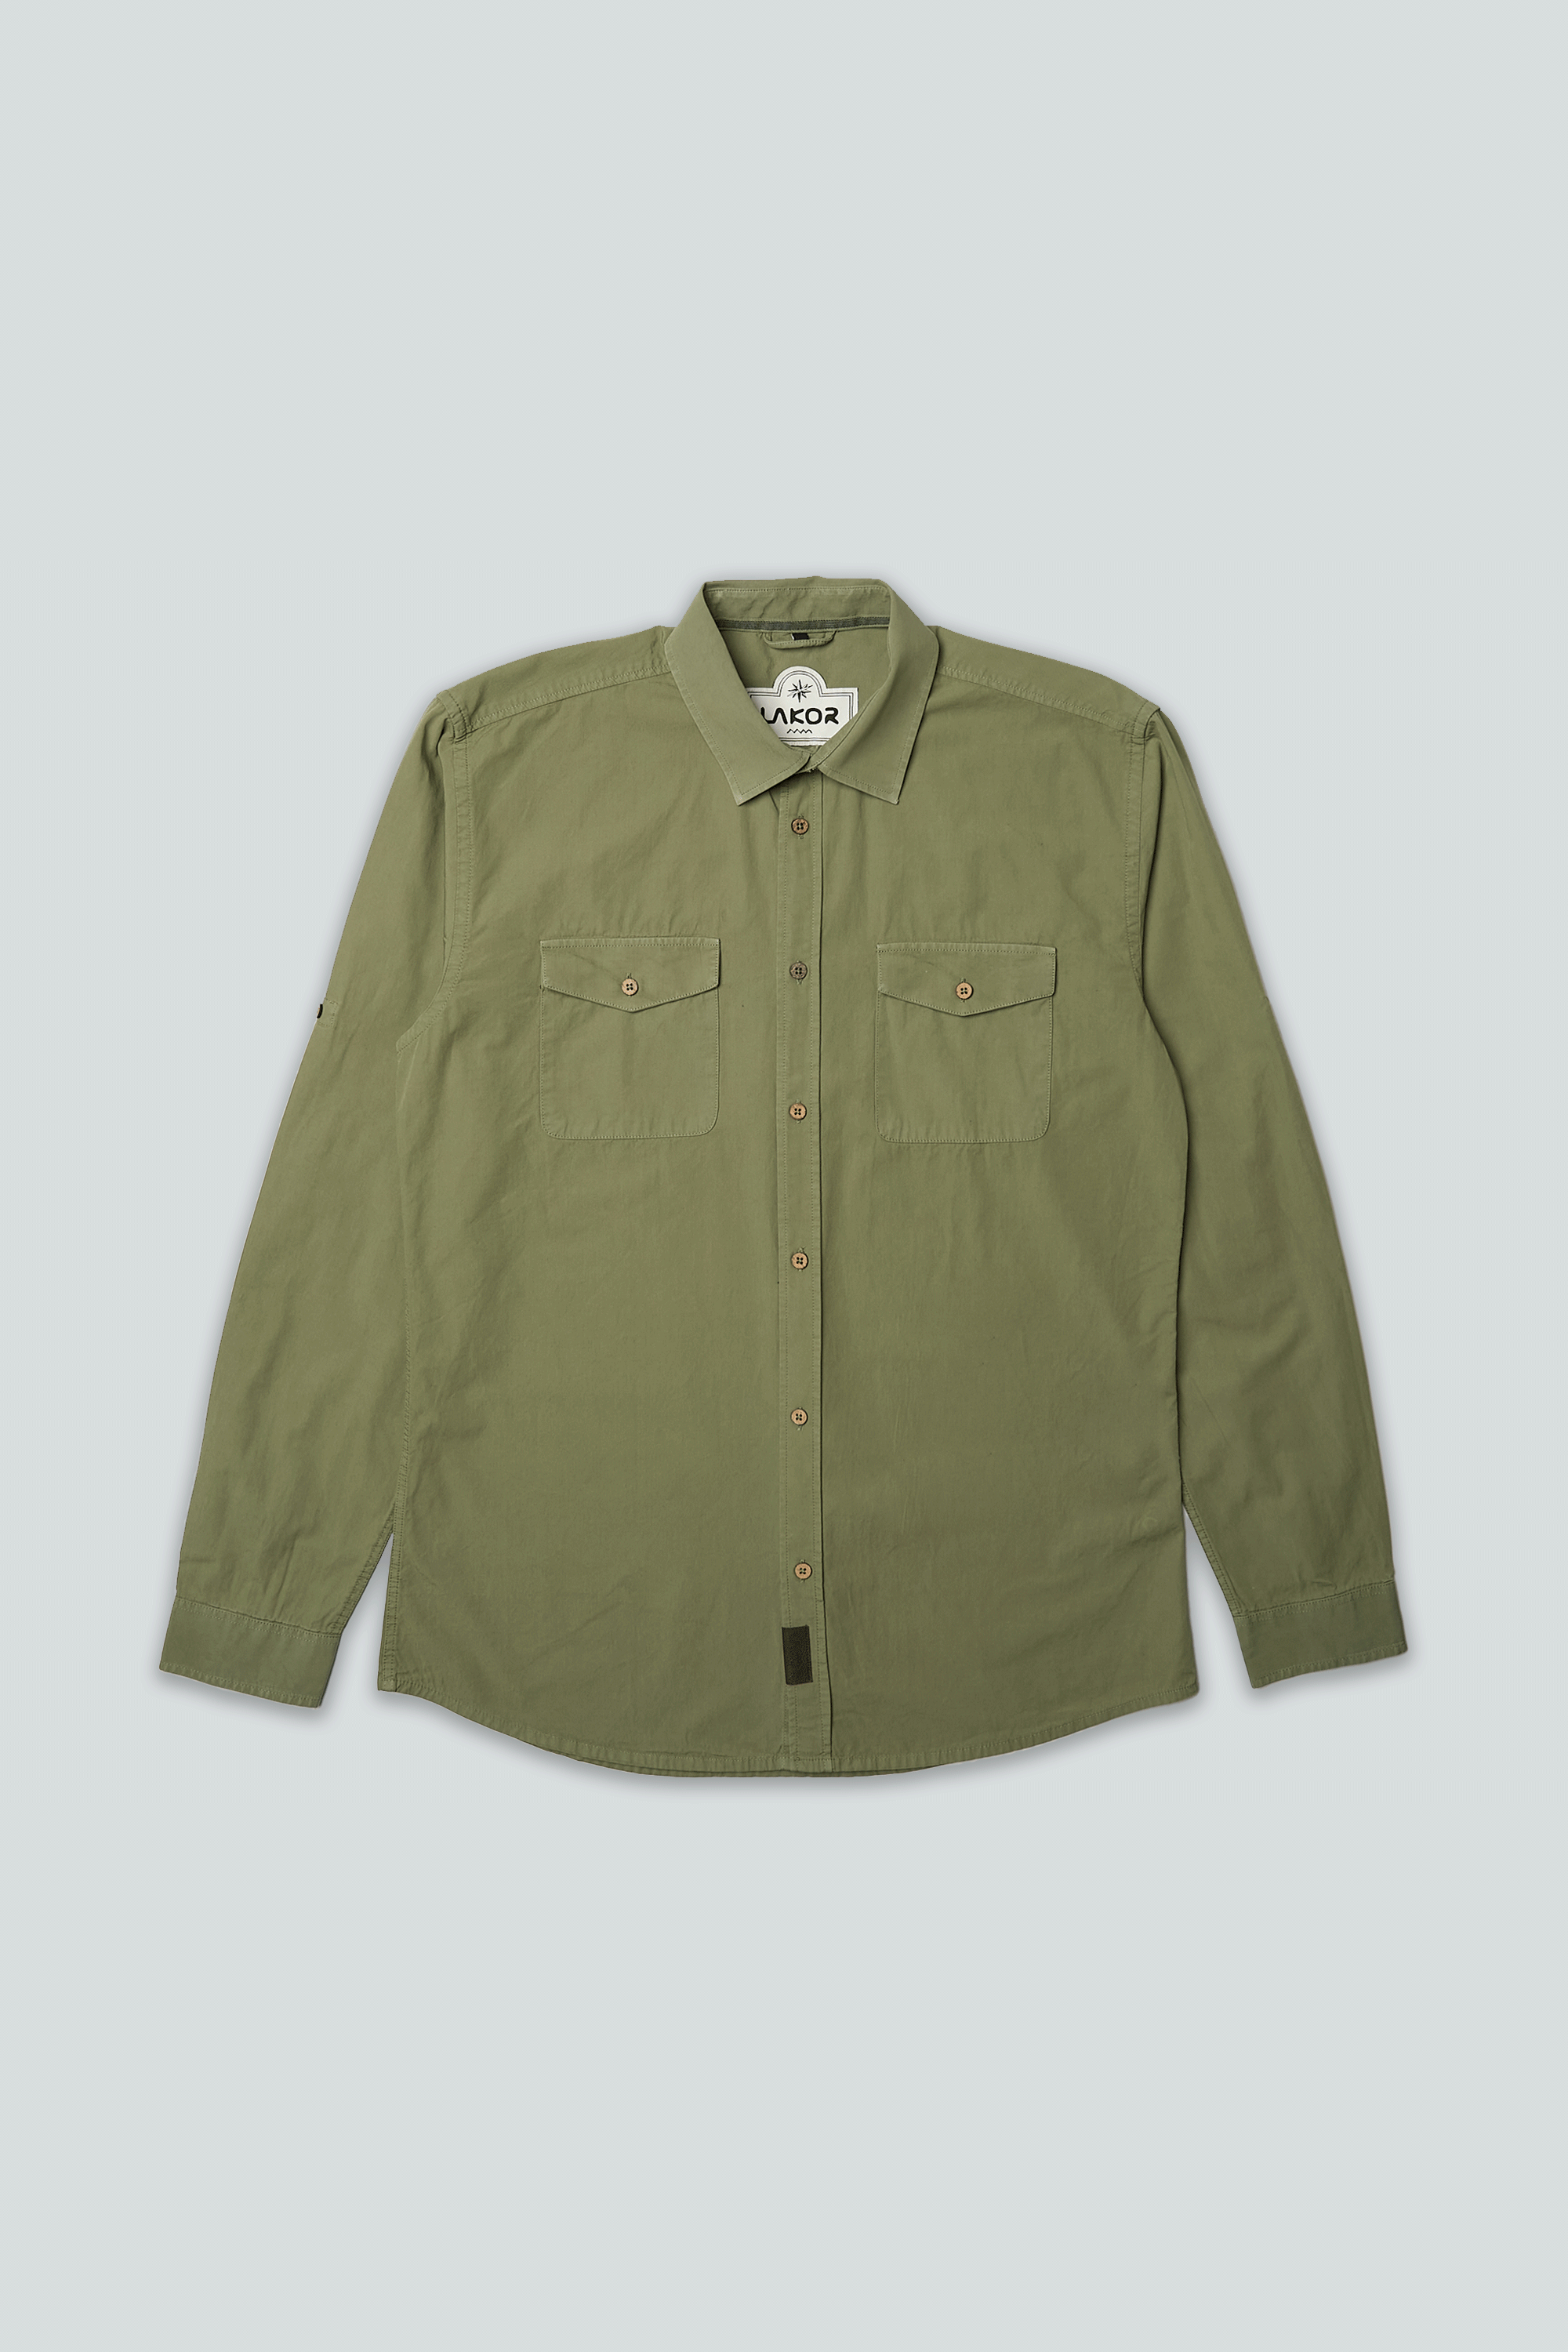 Klein Shirt (Deep Lichen Green)